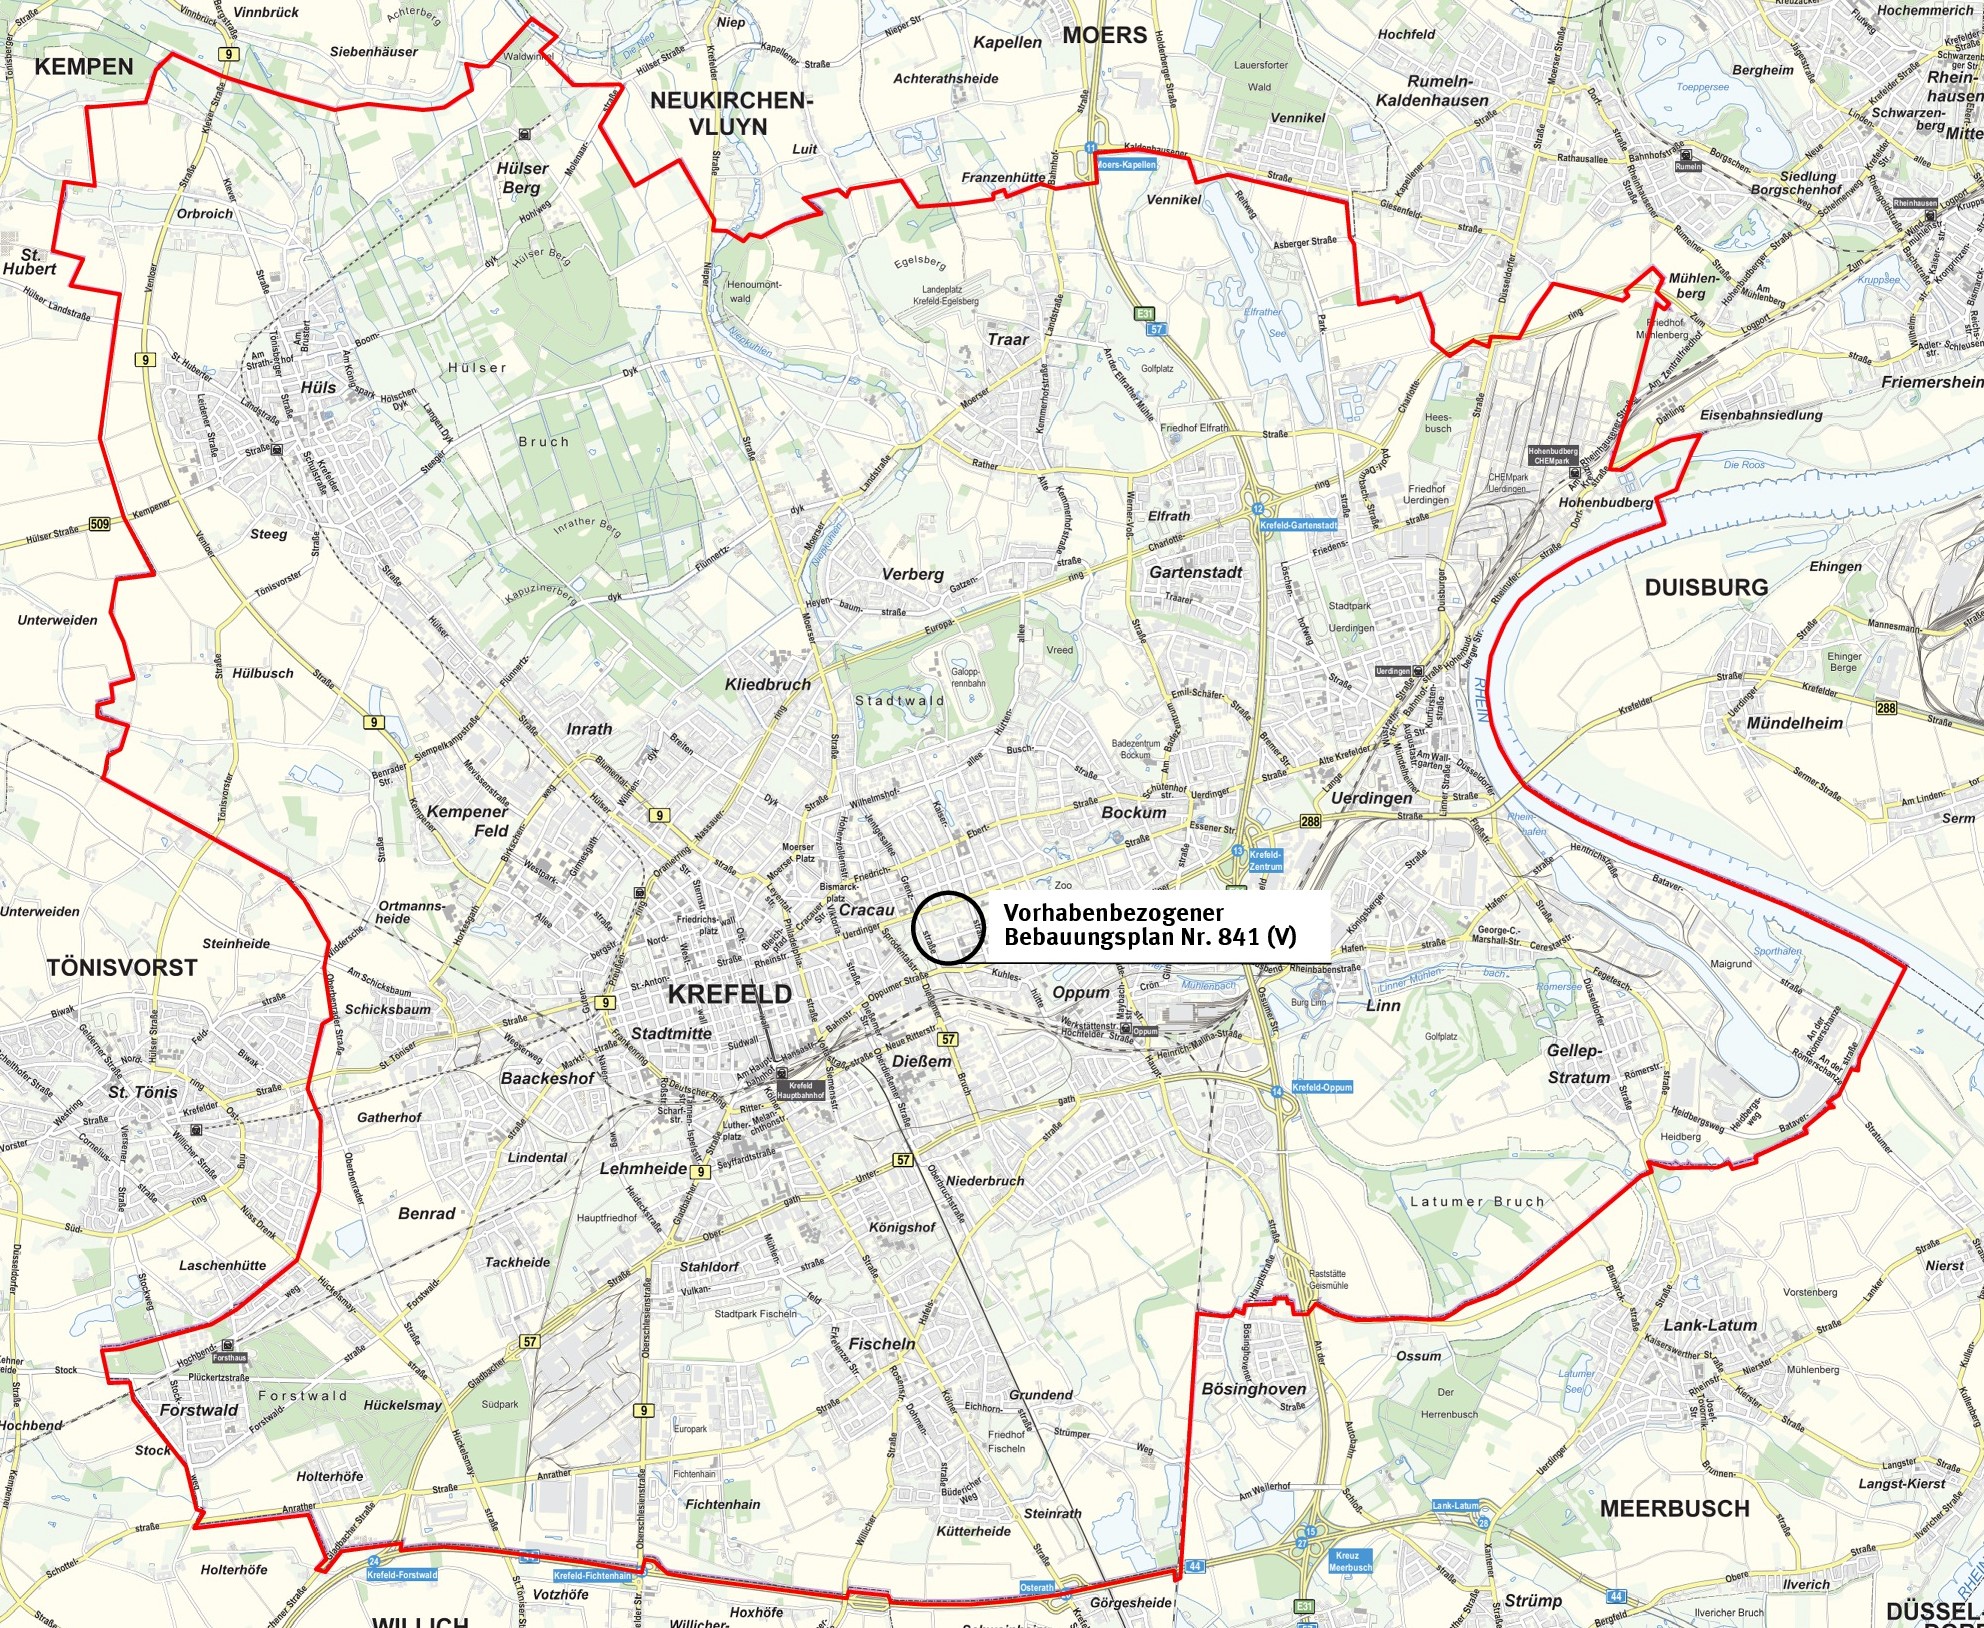 Vorhabenbezogener Bebauungsplan 841 (V) in der Stadtkarte